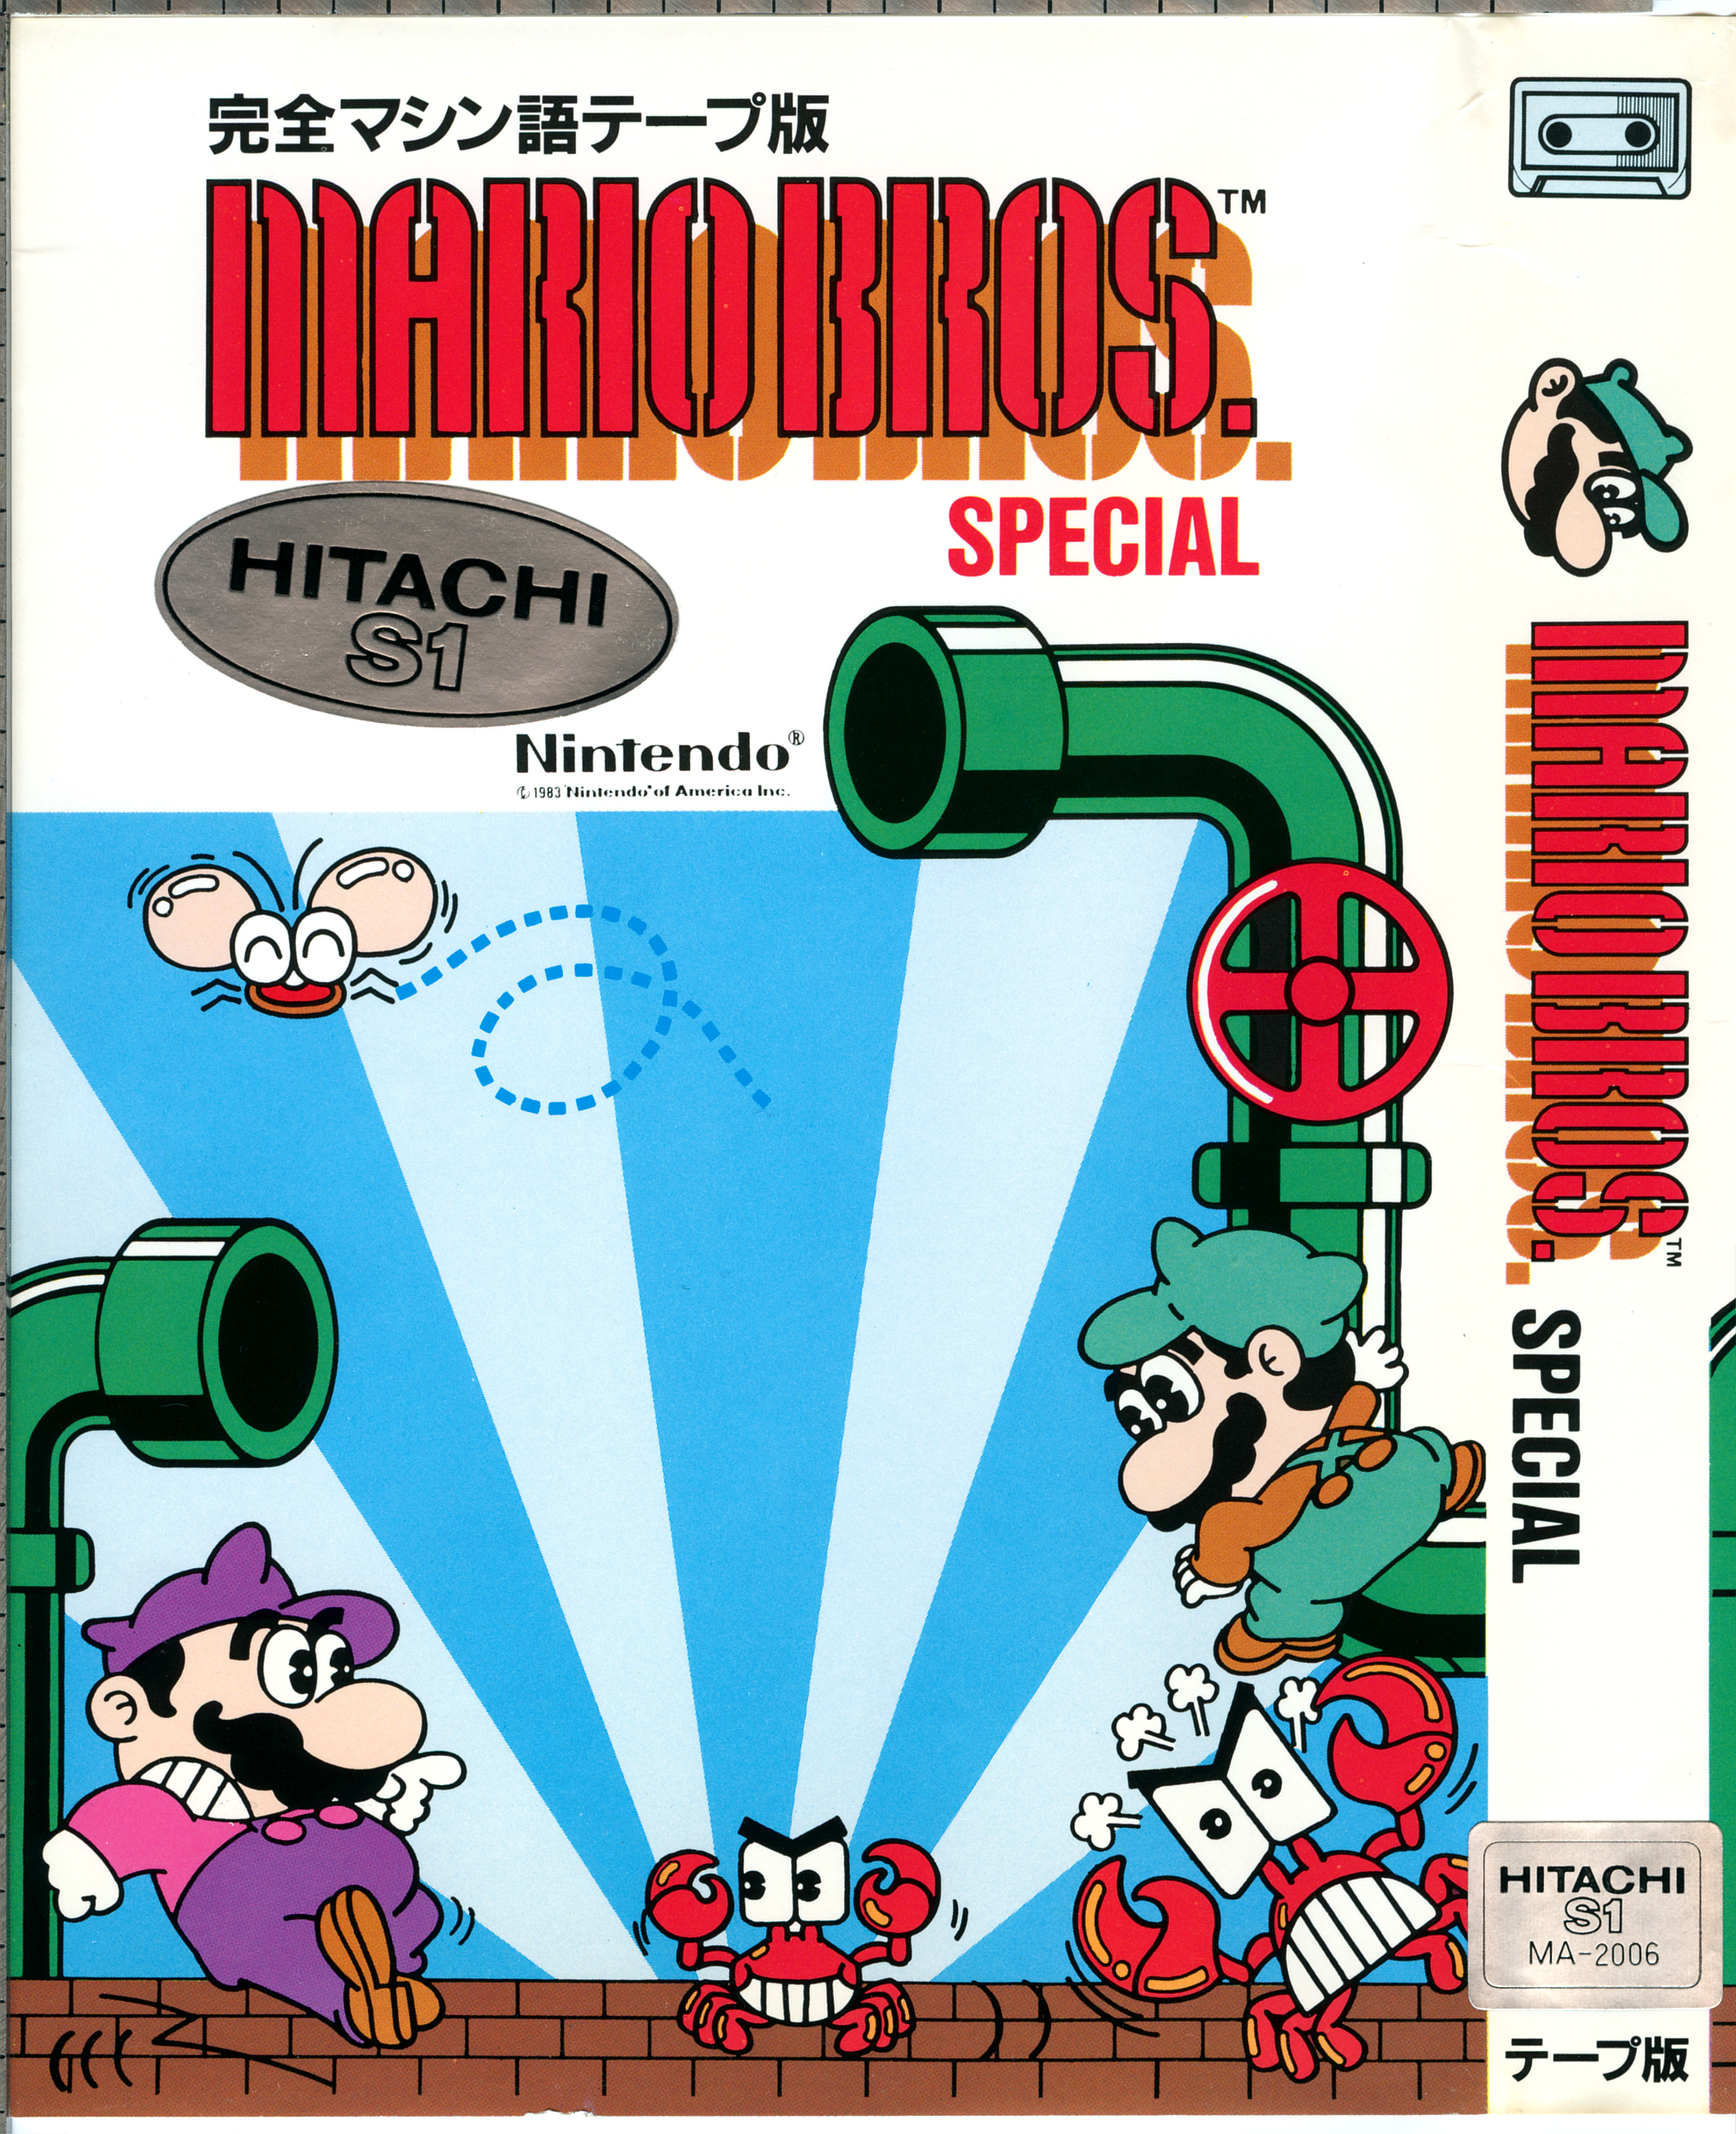 Mario bros special. Super Mario Bros Special. Mario Bros. Special 1984 обложка. Mario Bros. Special 1983 игра.